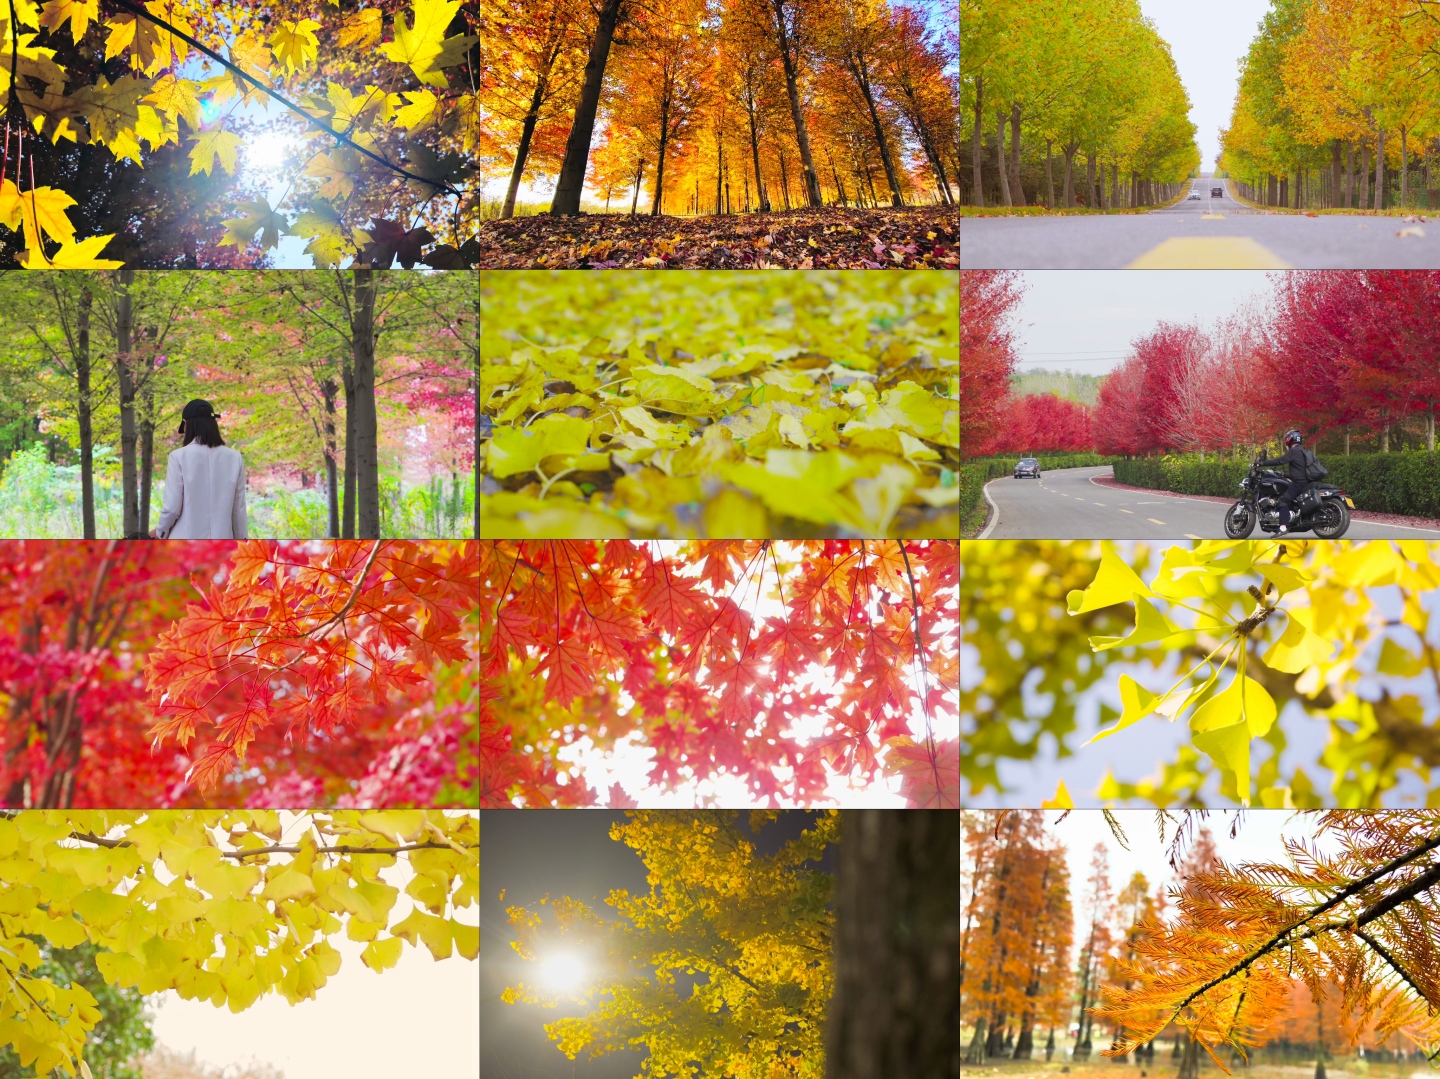 【15分钟】秋天风景红枫 银杏 落羽杉